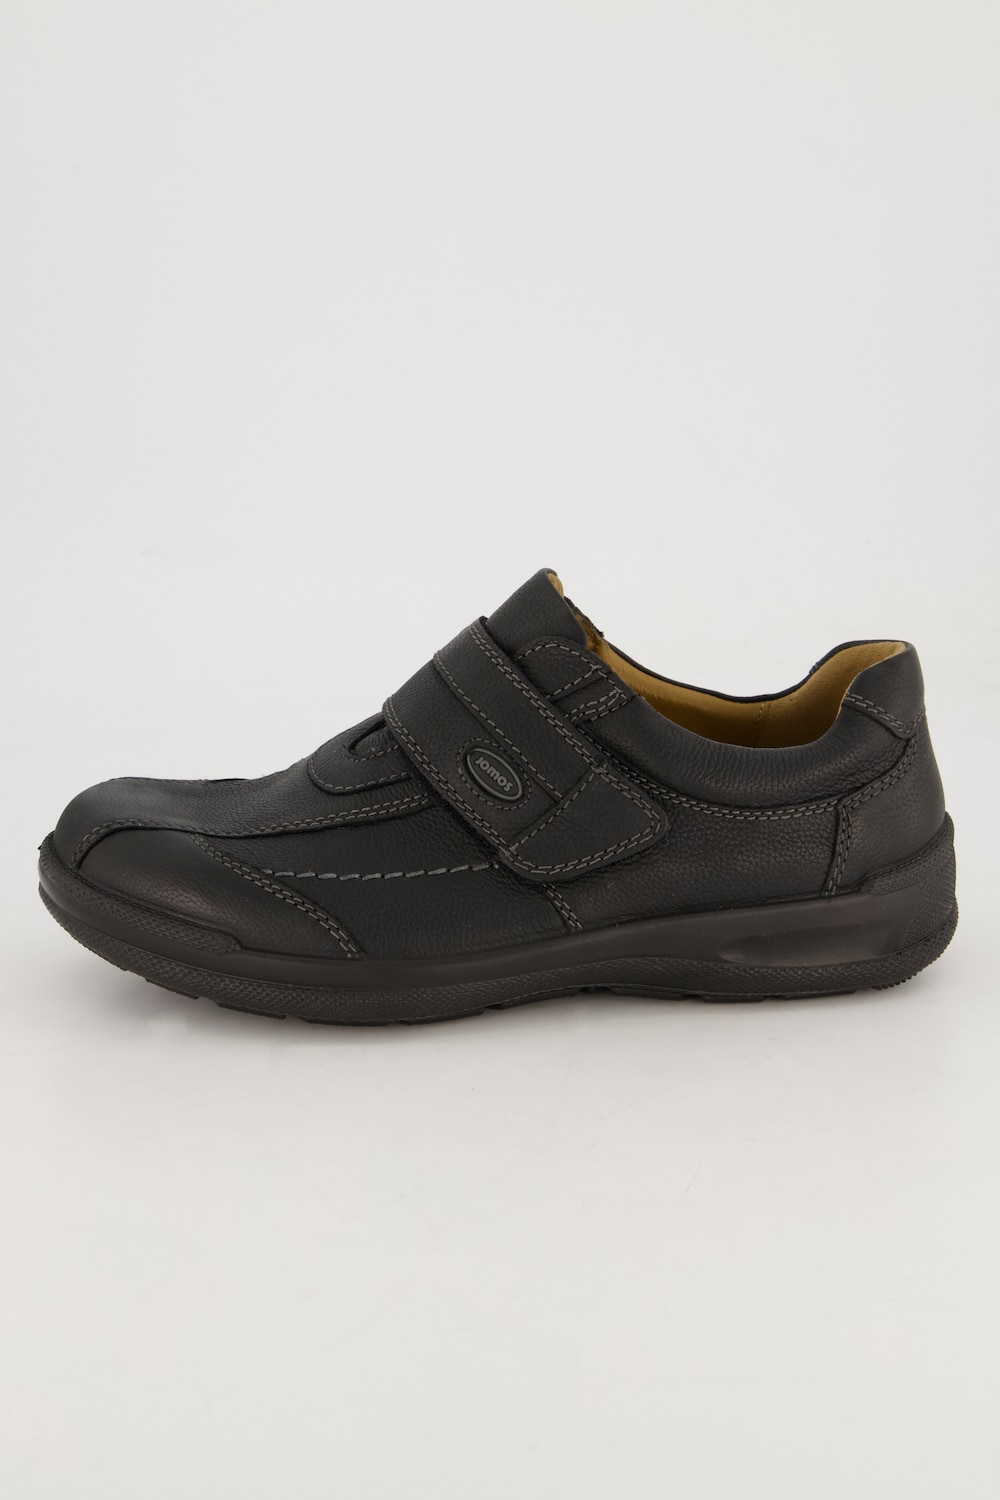 Grote Maten Loafers, Heren, zwart, Maat: 48, Leer, JP1880